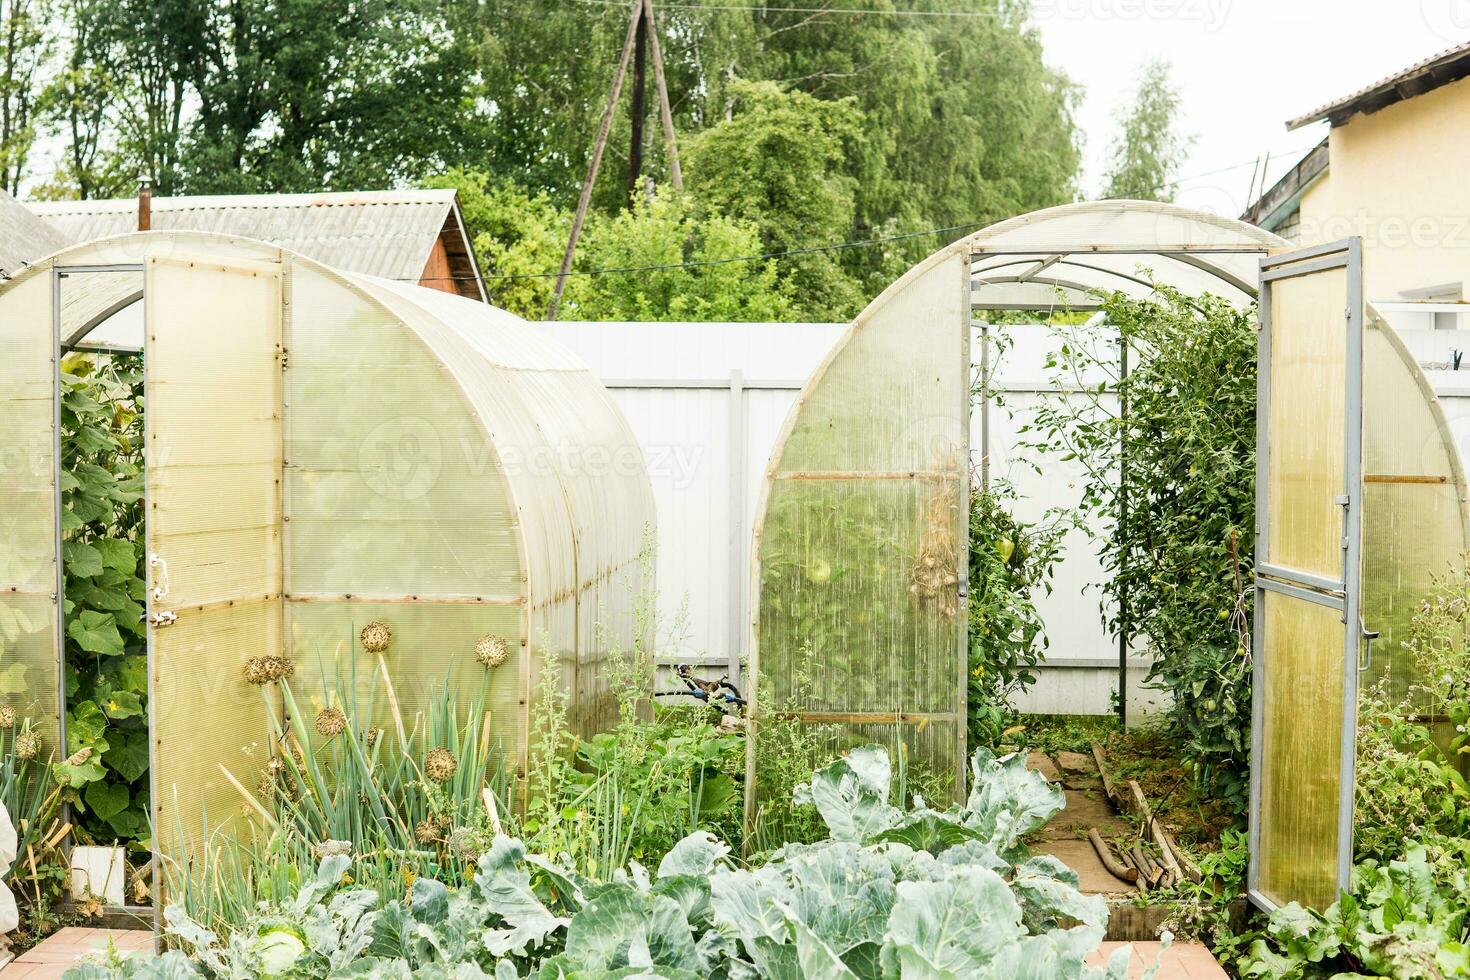 grande invernaderos para creciente hecho en casa vegetales. el concepto de jardinería y vida en el país. foto